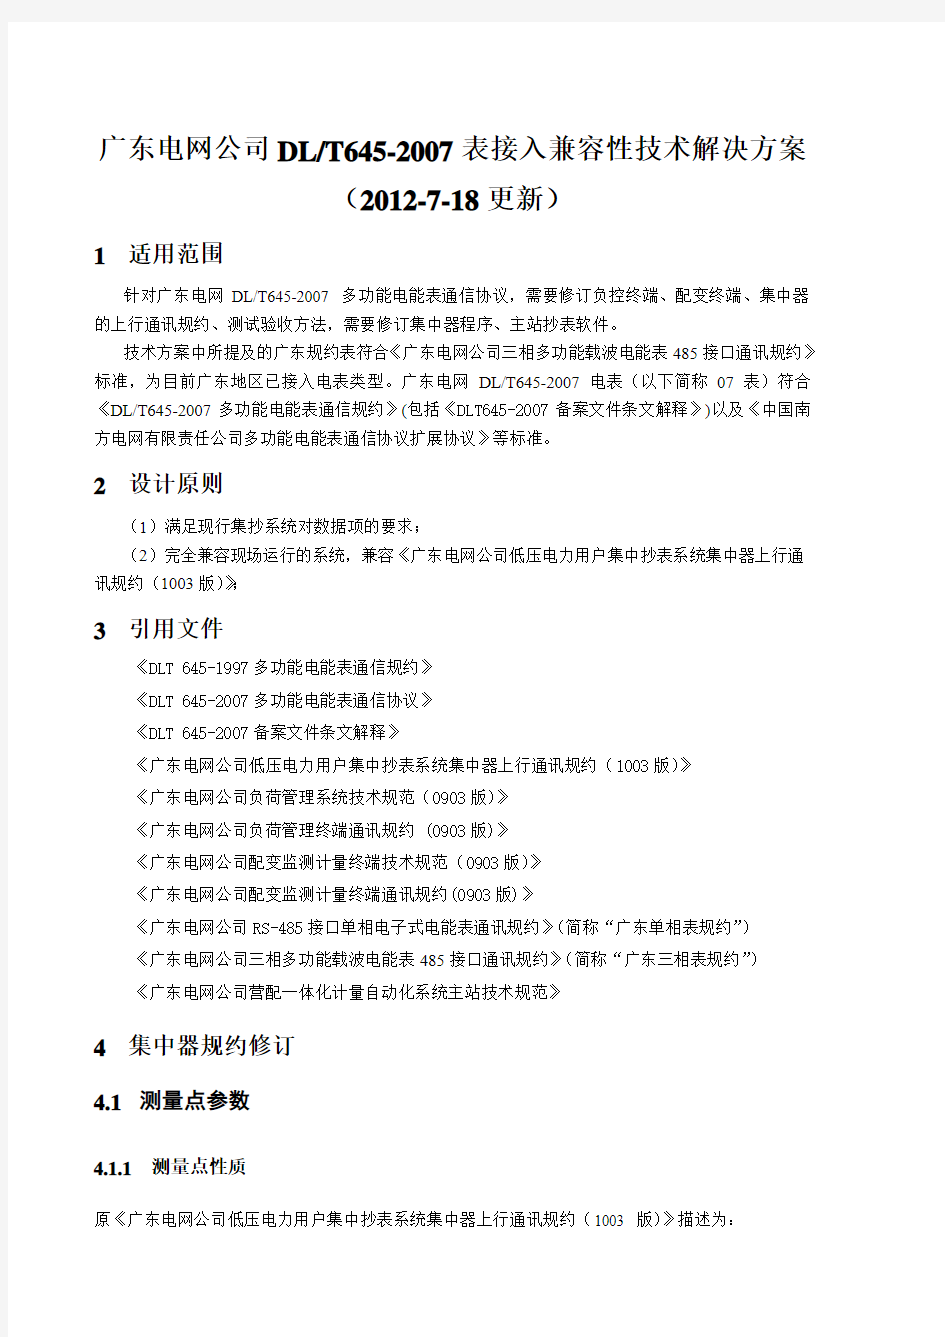 广东电网公司DLT645-2007电能表接入兼容性技术解决方案(0718)